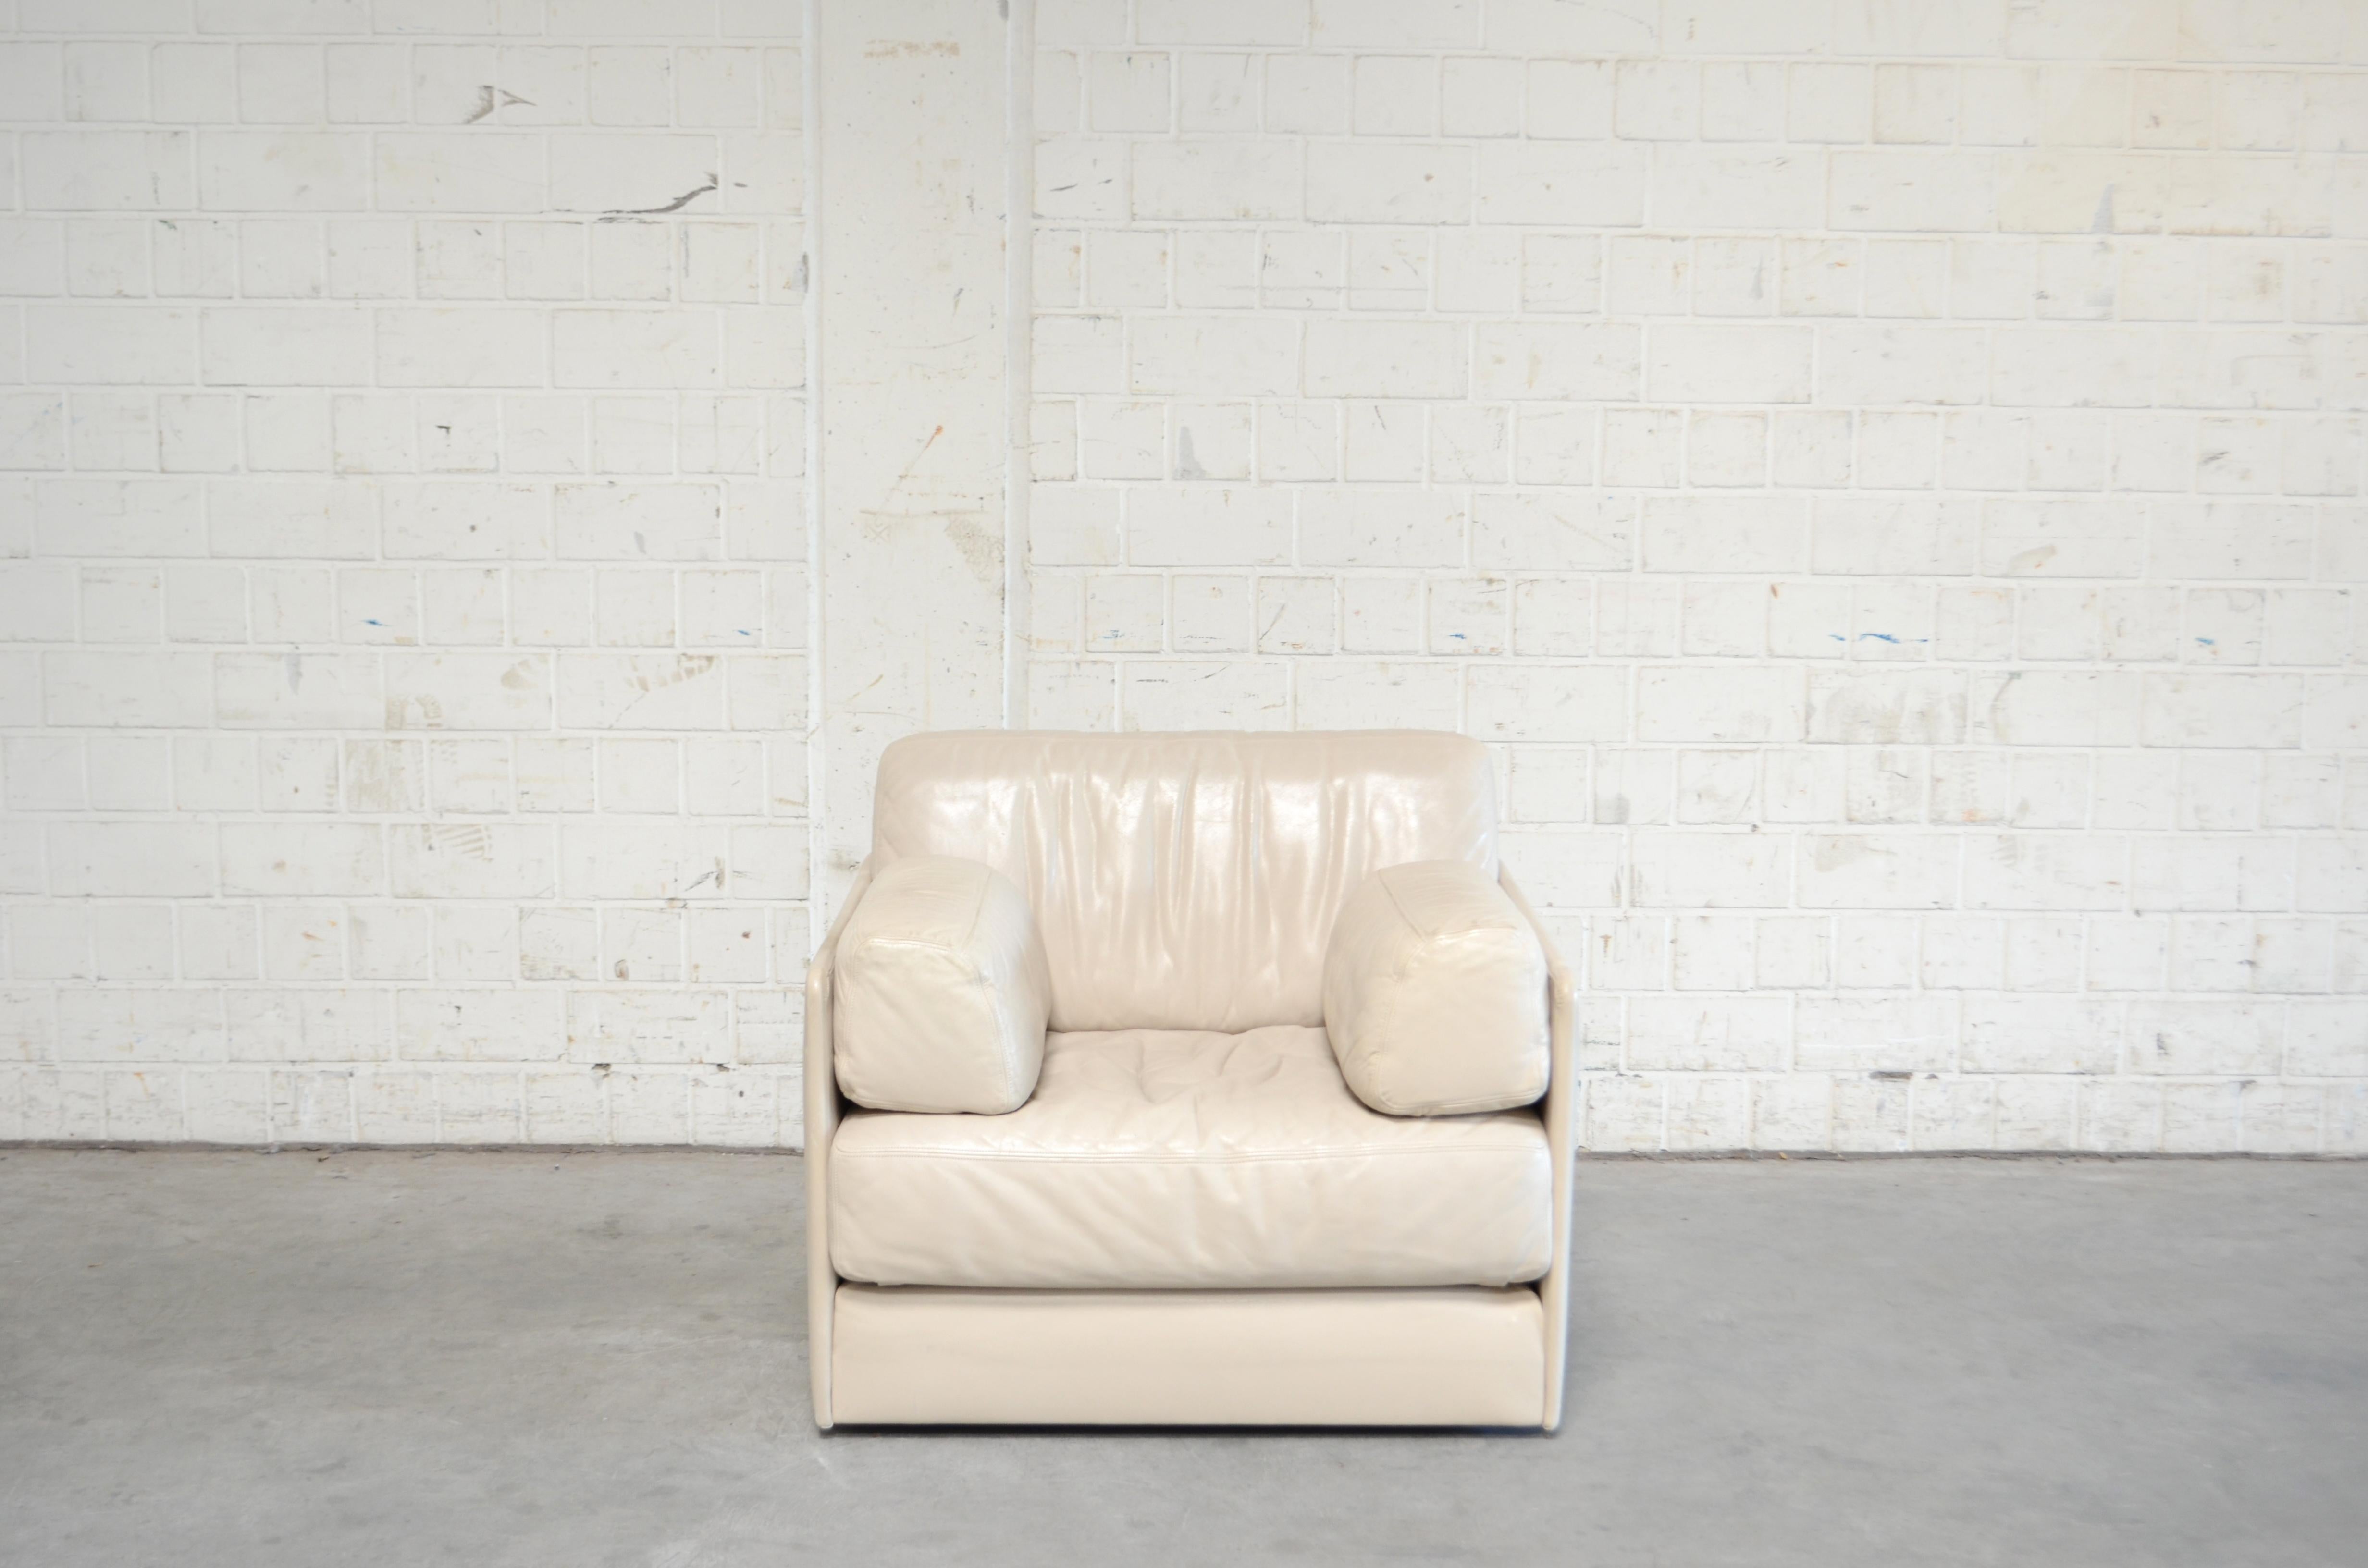 De Sede DS 76 Sessel aus weißem cremefarbenem Leder / Tagesbett (Schweizerisch)